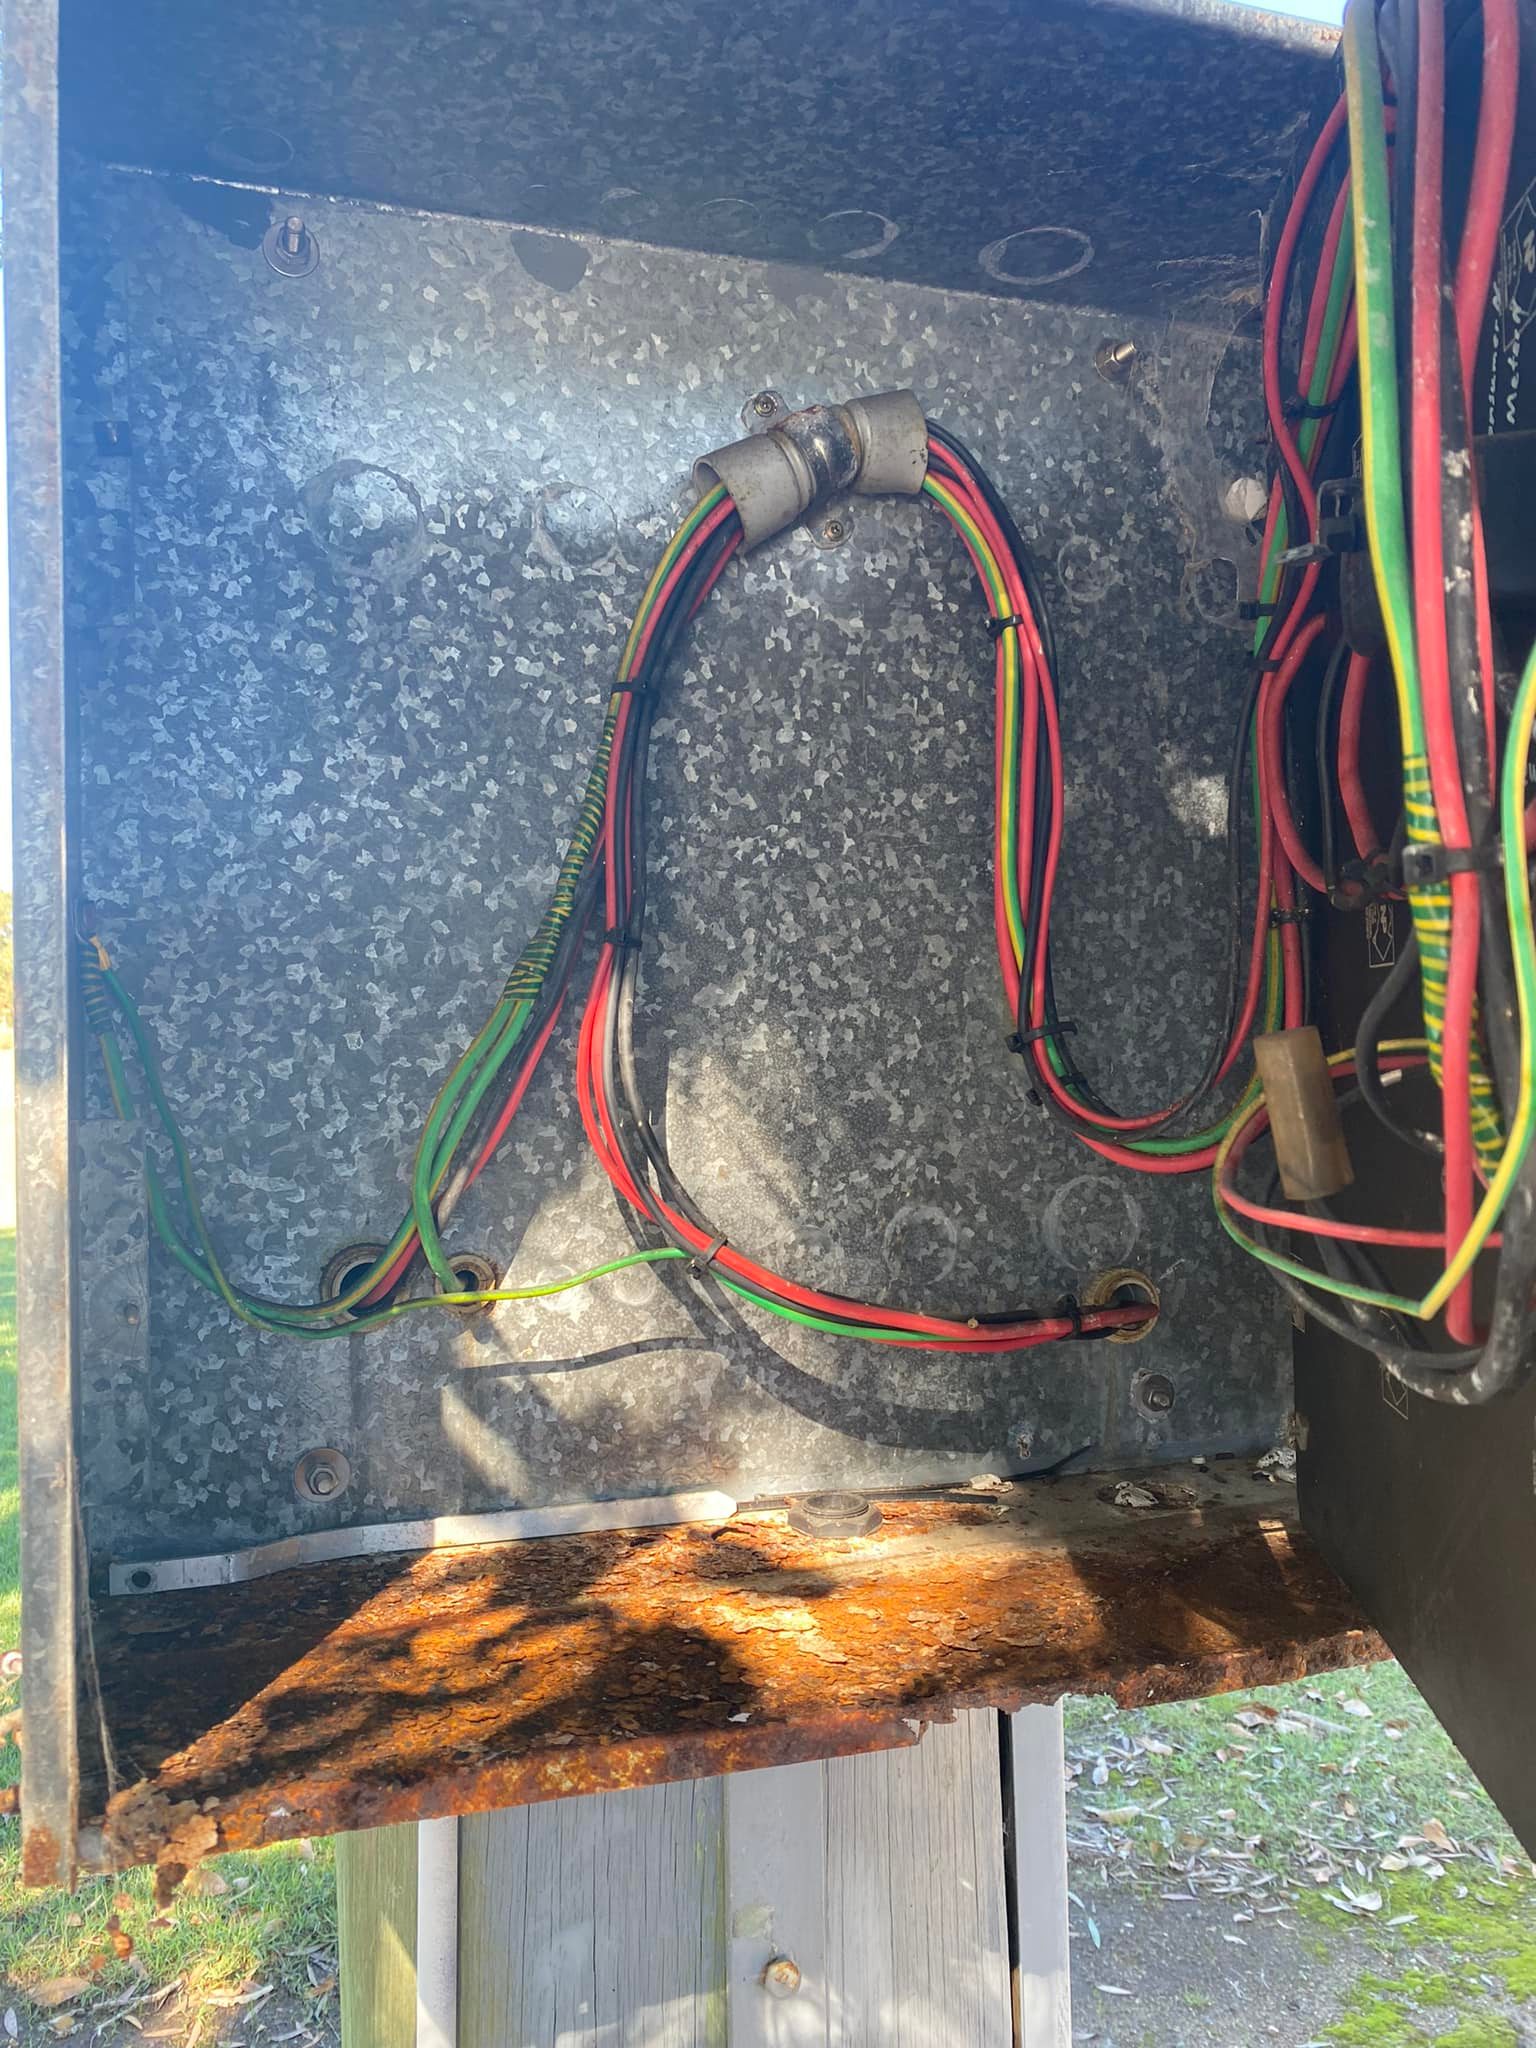 Rusty switchboard